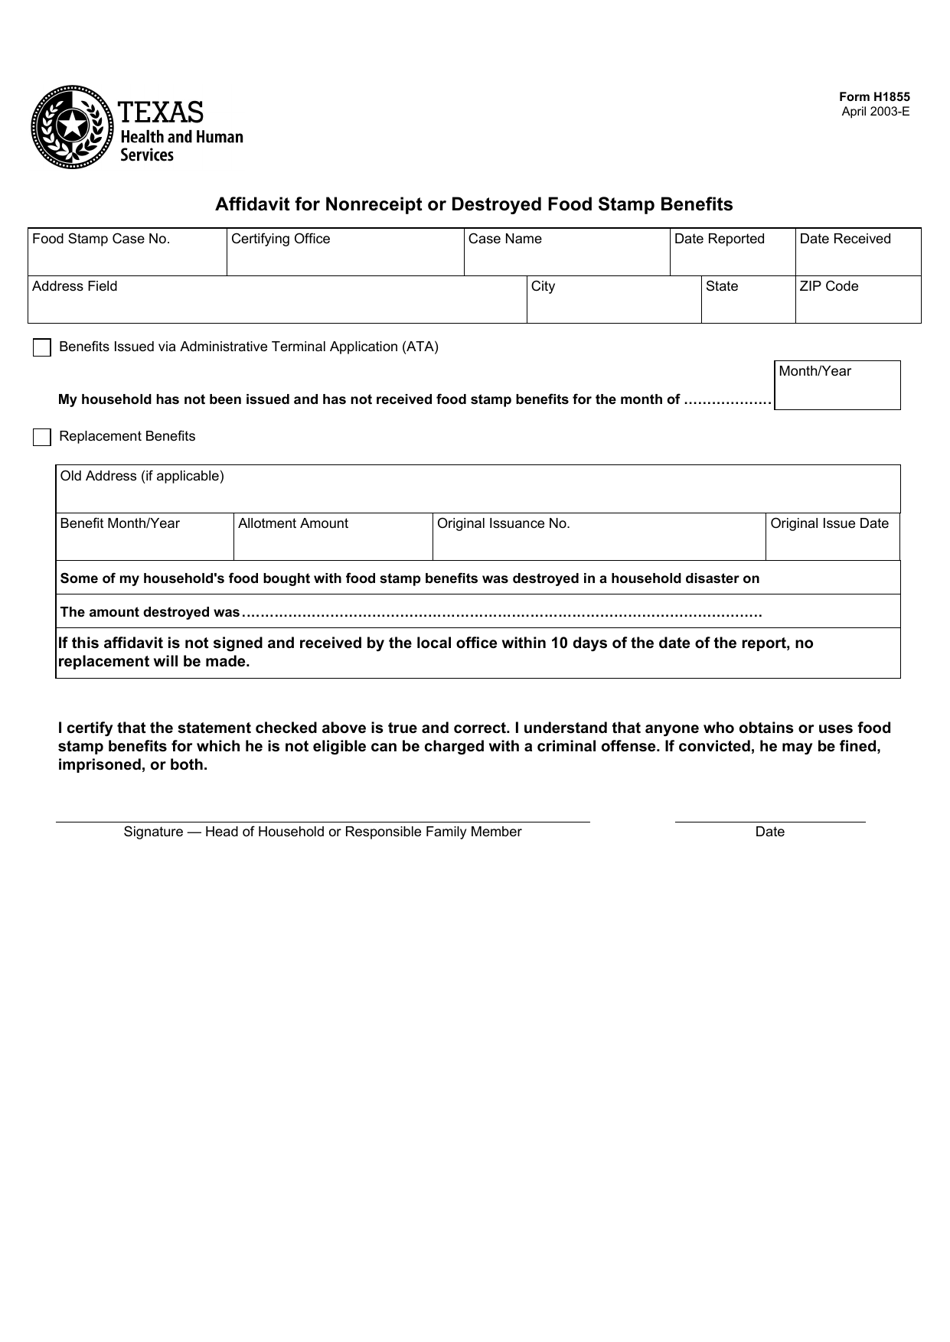 form-h1855-download-fillable-pdf-or-fill-online-affidavit-for